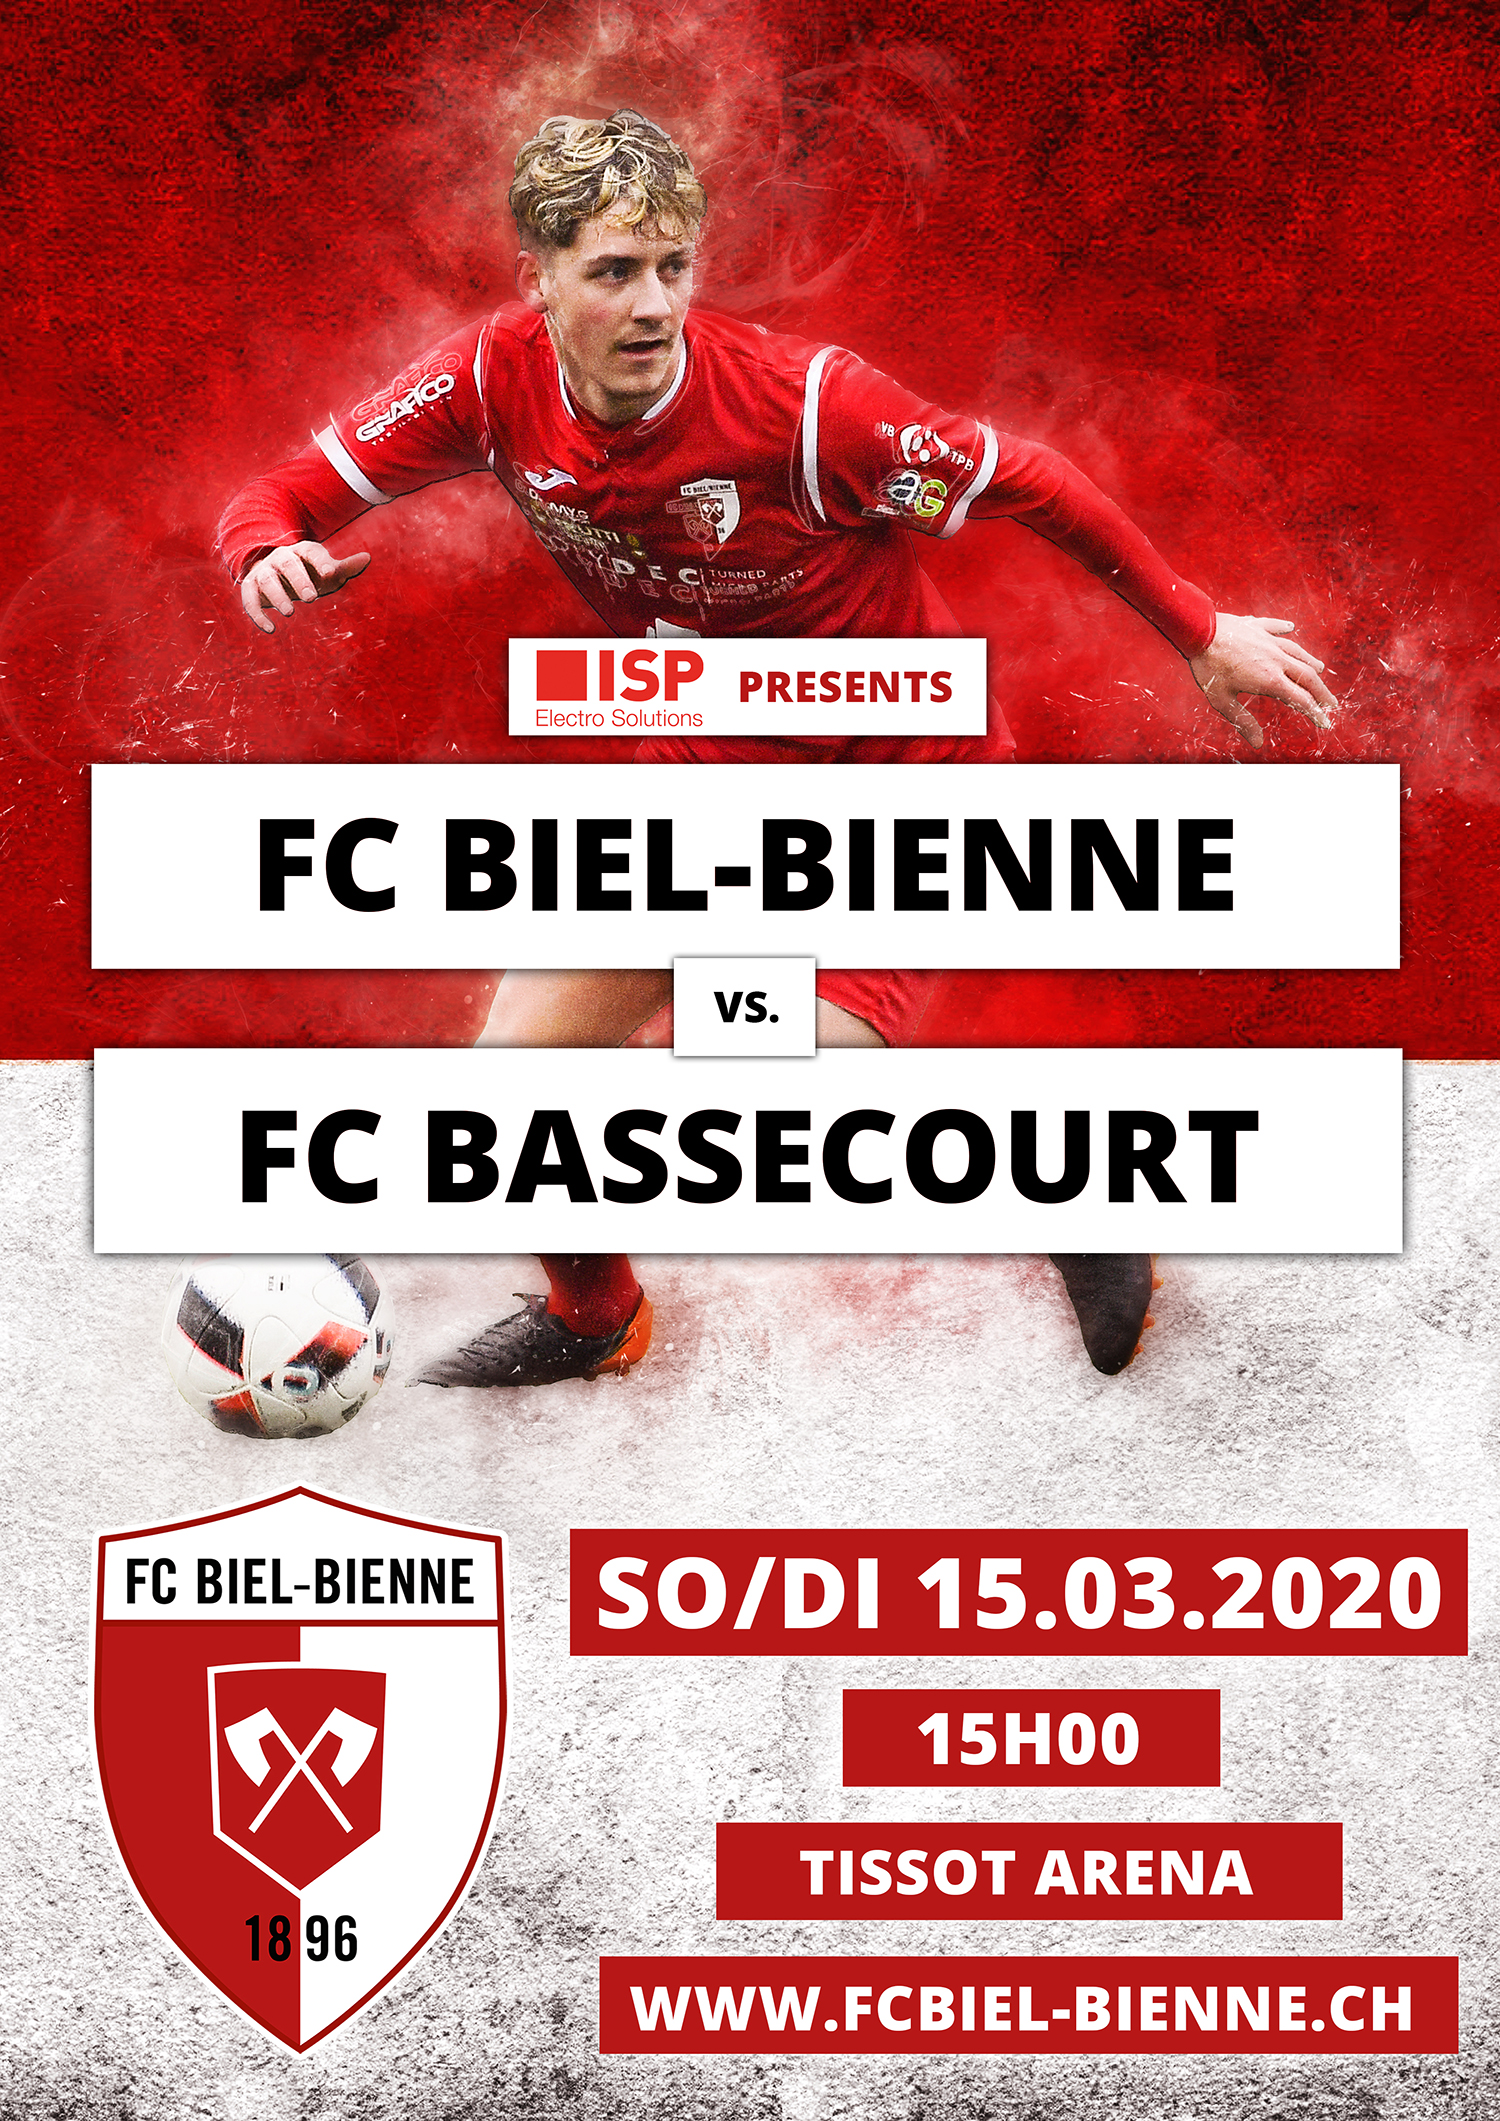 RENVOYÉ: FC Biel-Bienne vs. FC Bassecourt